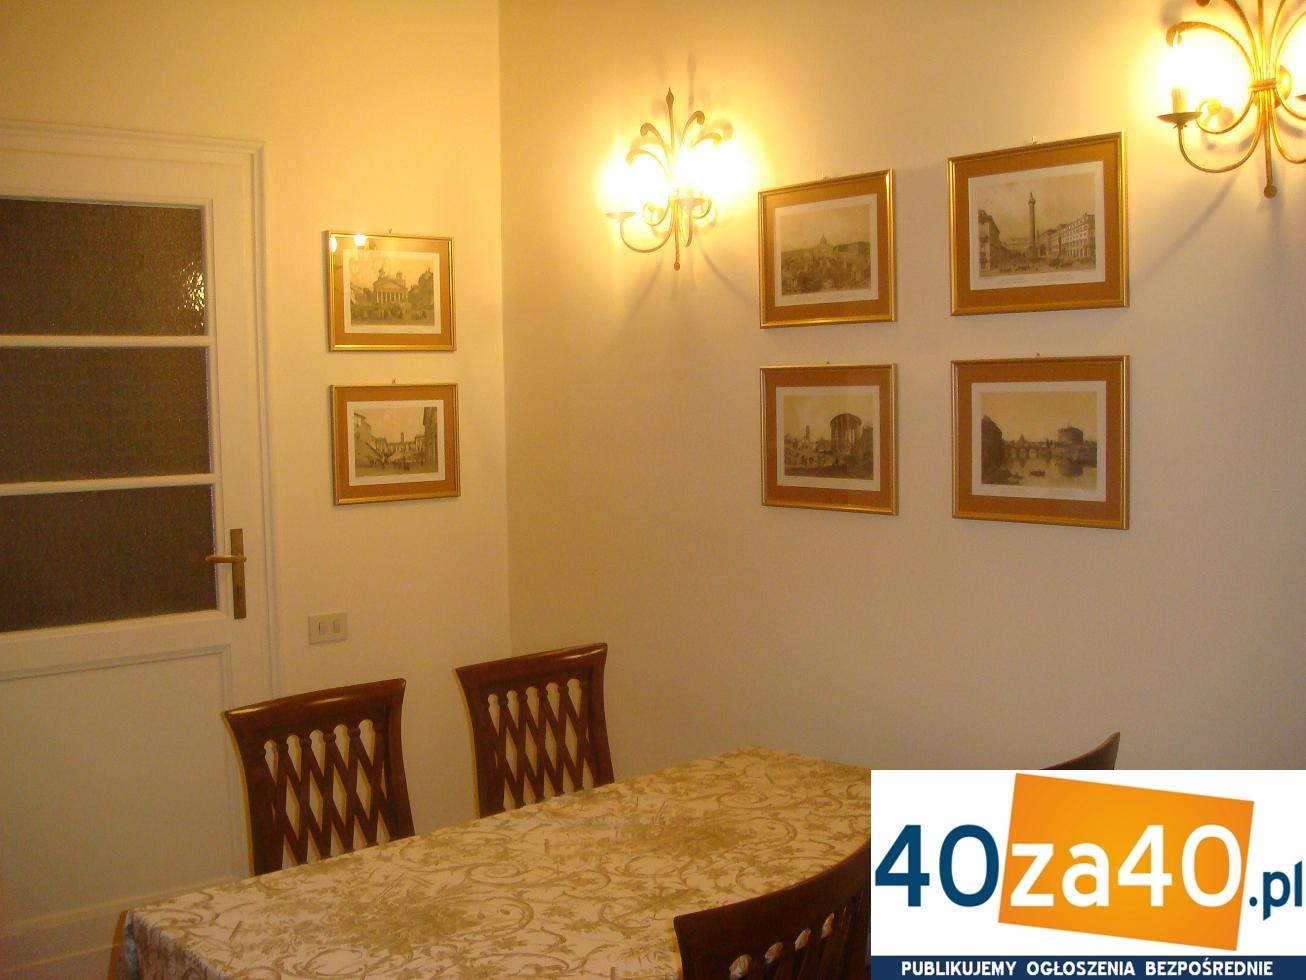 Mieszkanie do wynajęcia, pokoje: 2, cena: 2 000,00 PLN, Kraków, kontakt: +48 663 888 412